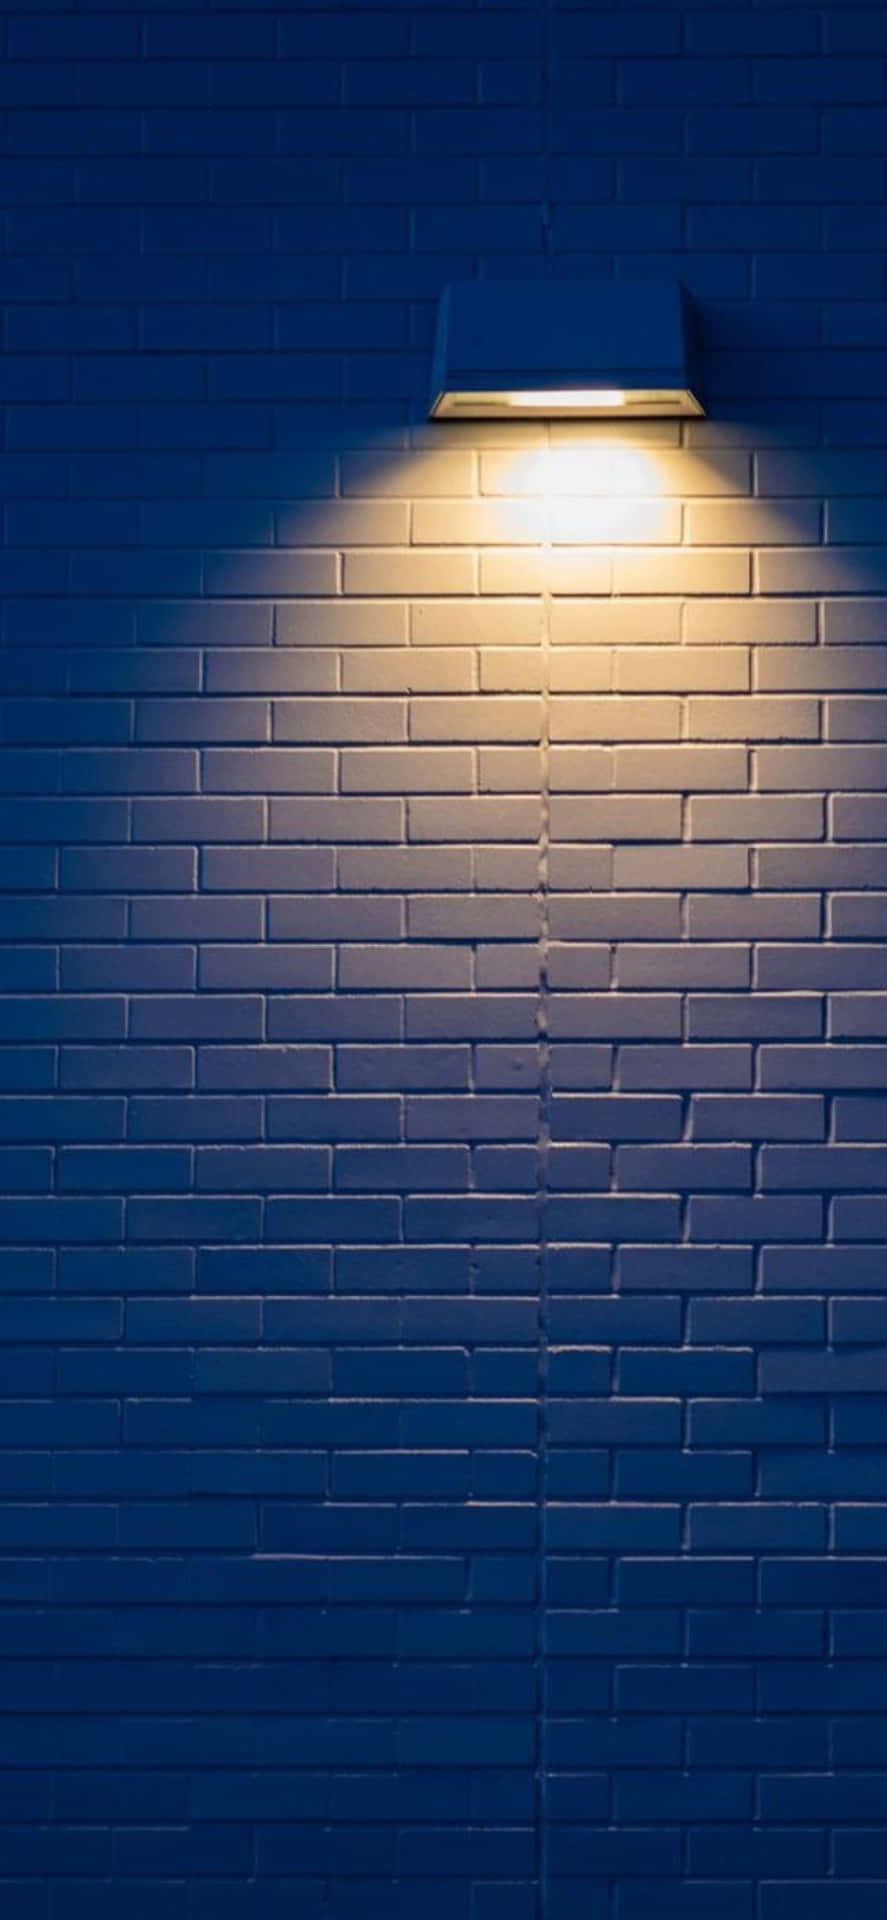 Sfondominimalista Per Iphone X Con Una Lampada Su Un Muro Di Mattoni.